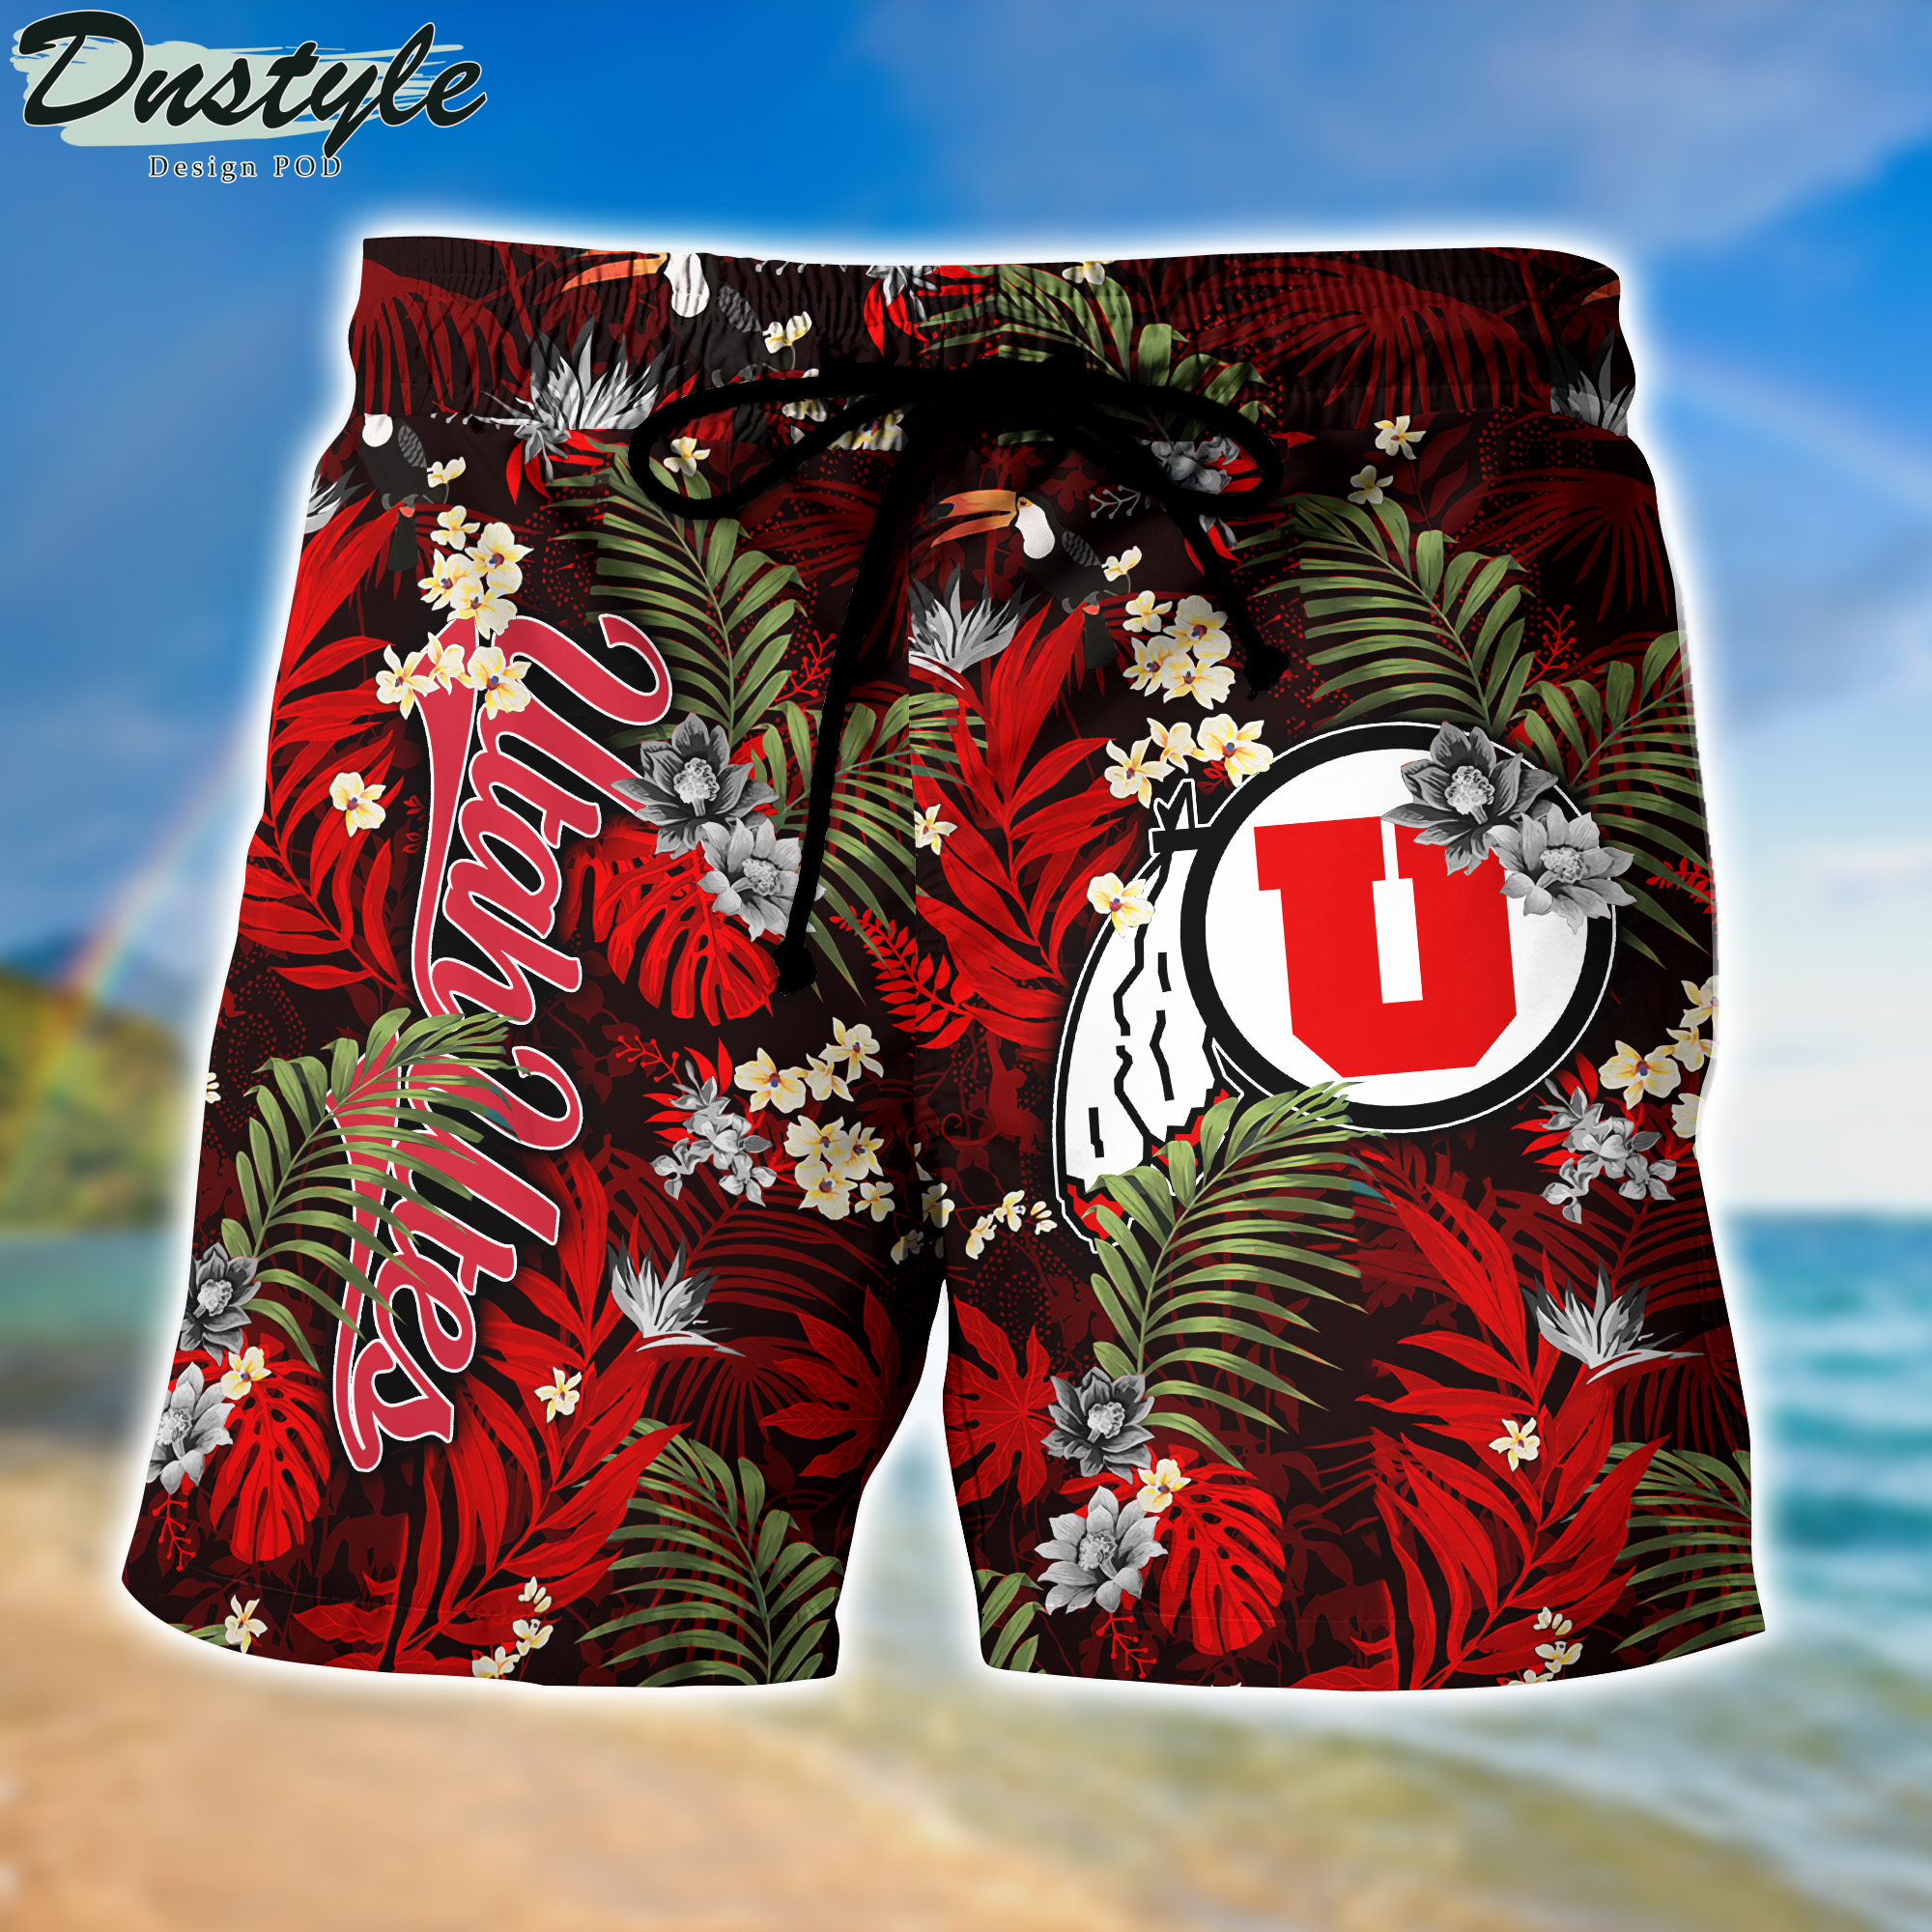 Utah Utes Hawaii Shirt And Shorts New Collection